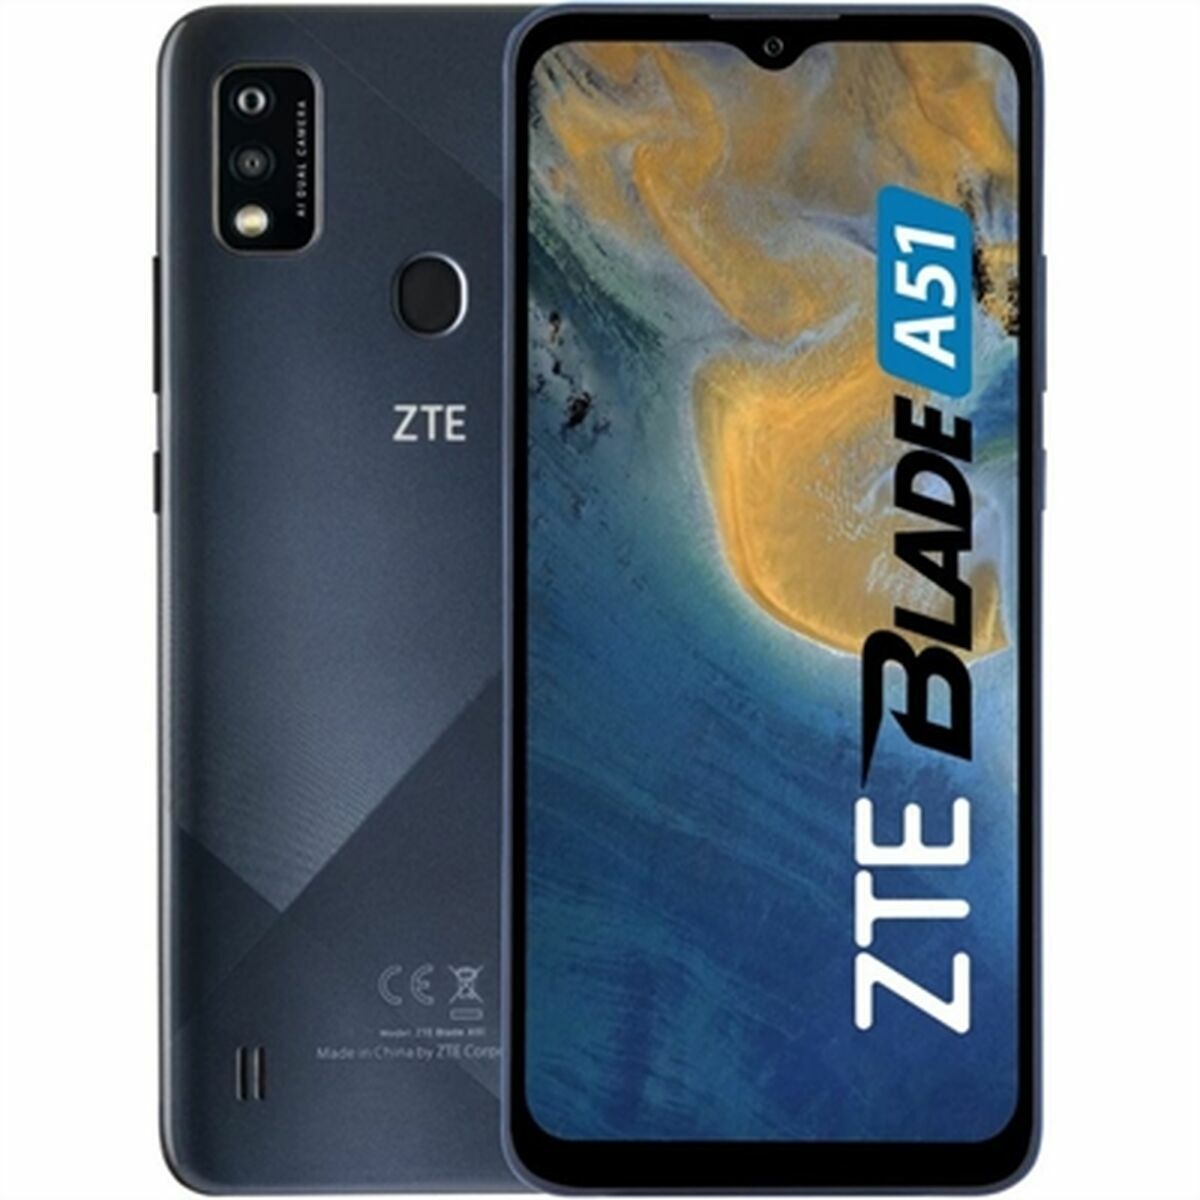 Osta tuote Älypuhelimet ZTE ZTE Blade A52 6,52″ 2 GB RAM 64 GB Harmaa 64 GB Octa Core 2 GB RAM 6,52″ verkkokaupastamme Korhone: Tietokoneet & Elektroniikka 10% alennuksella koodilla KORHONE